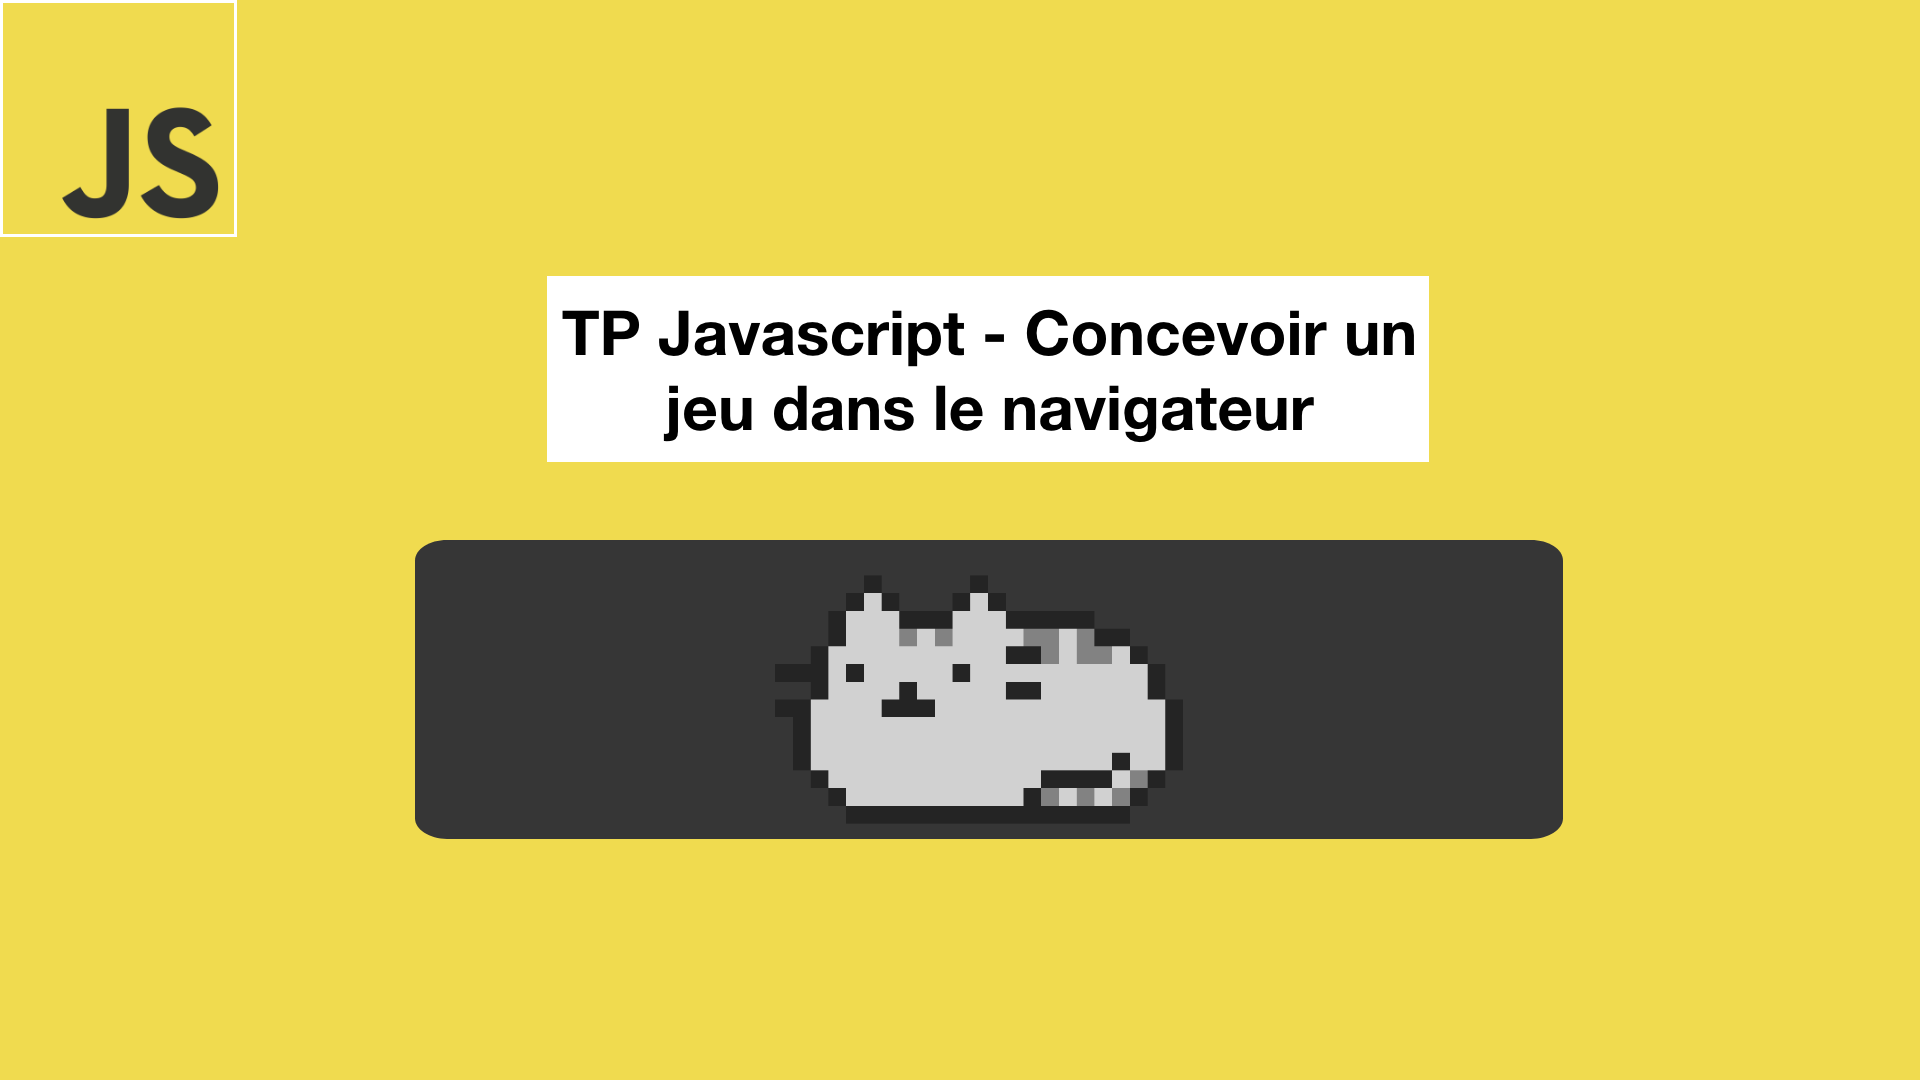 TP Javascript - Concevoir un jeu dans le navigateur